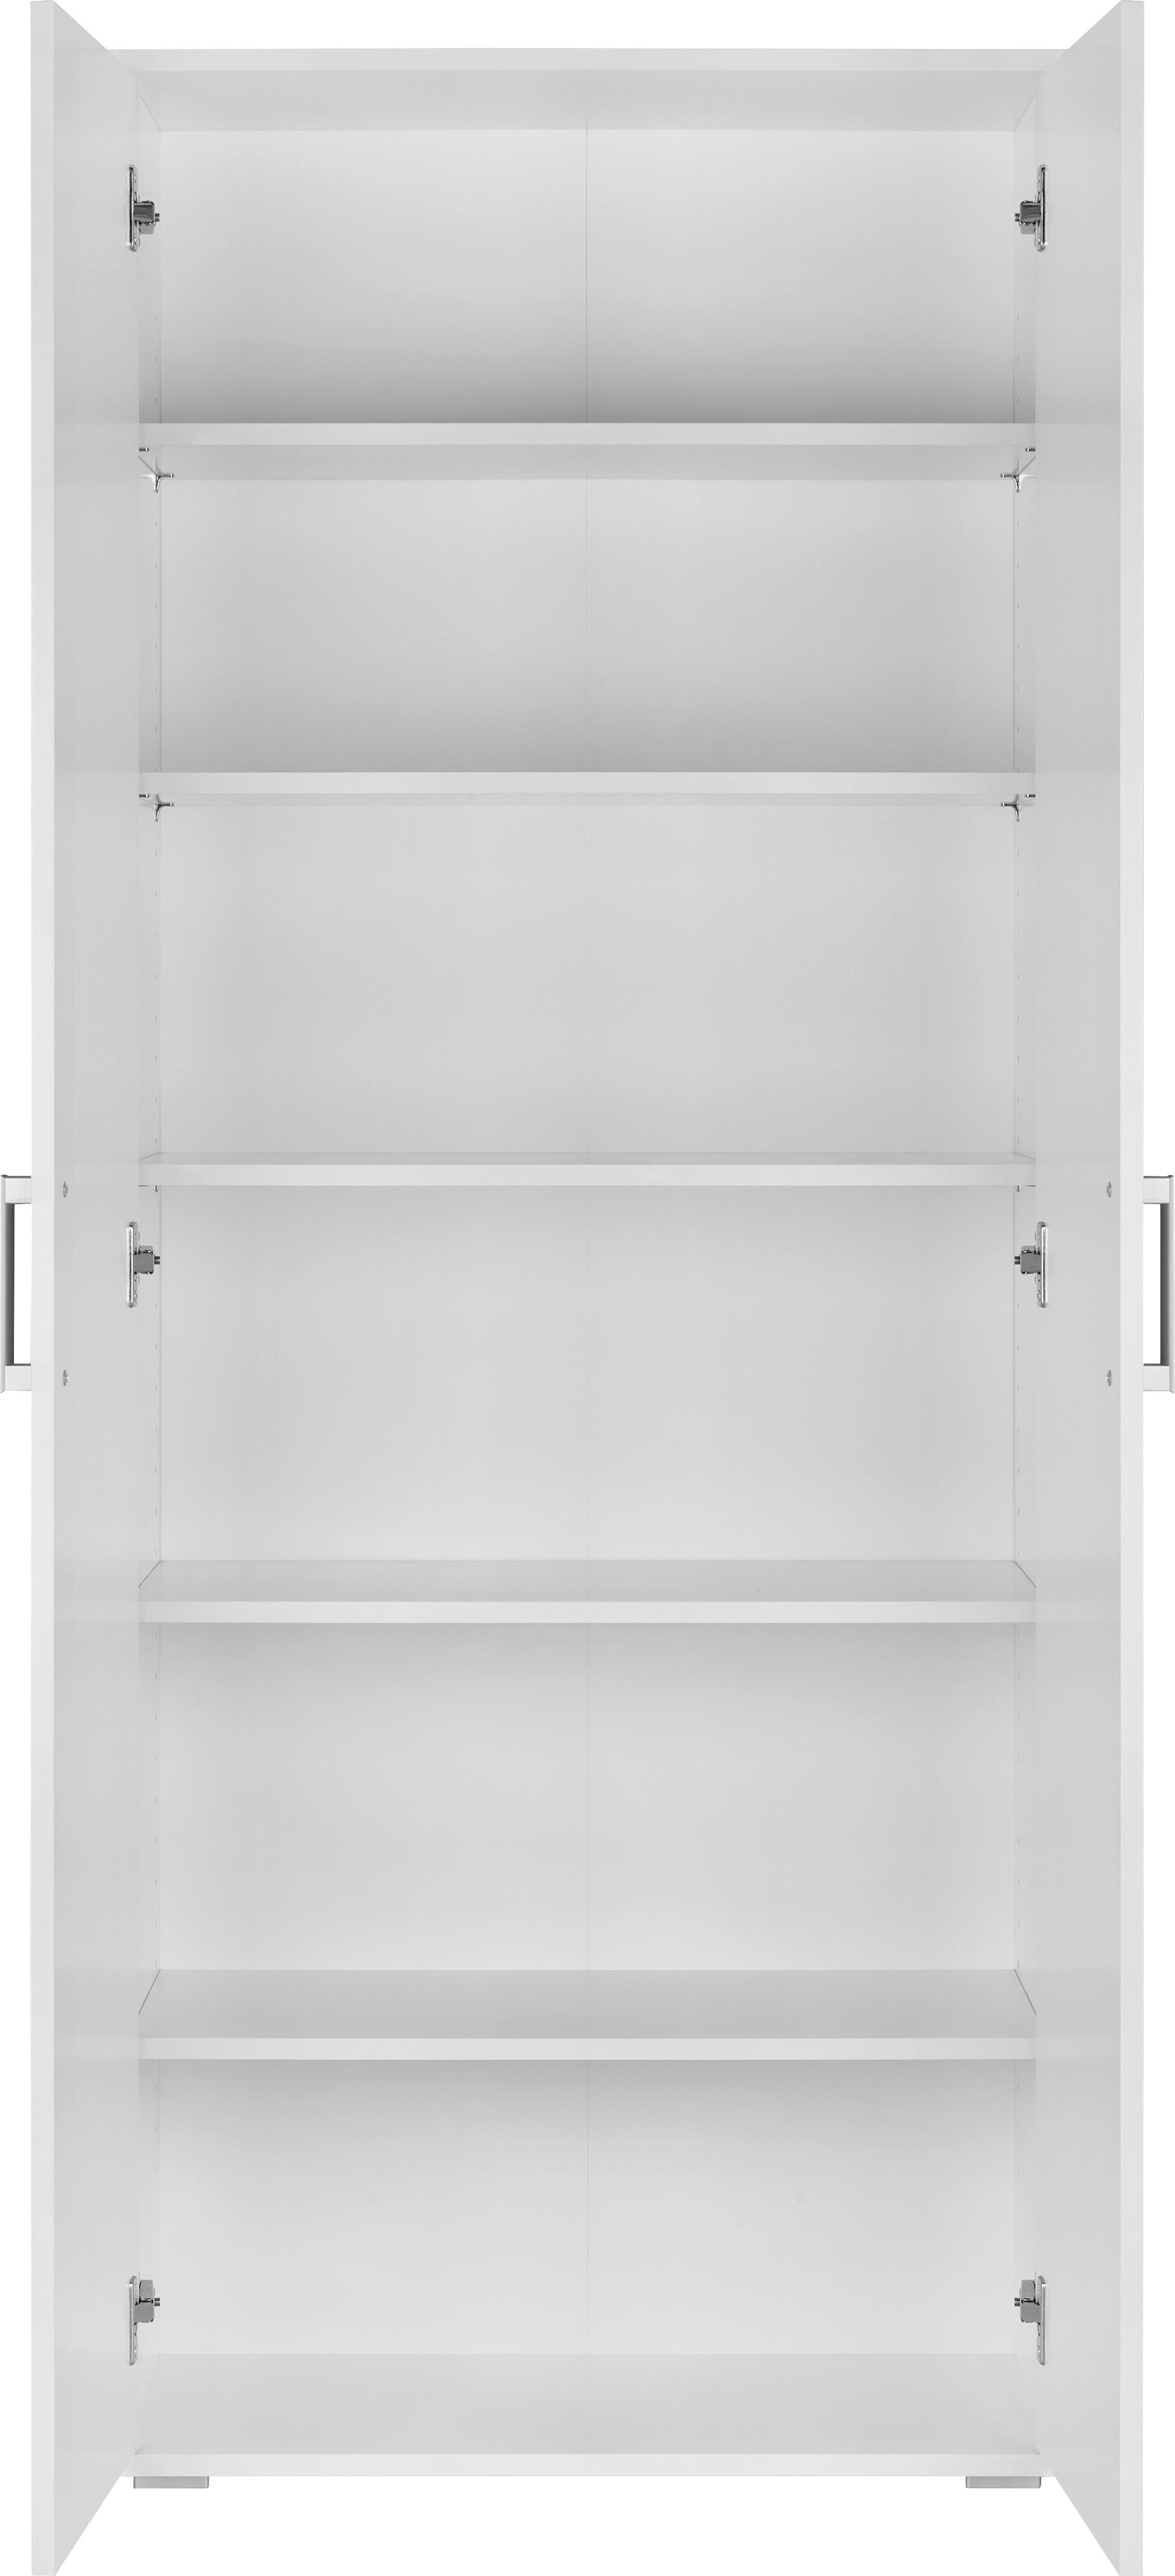 Mehrzweckschrank in Weiß - Alufarben/Weiß, MODERN, Holzwerkstoff/Kunststoff (70/179/34cm) - Modern Living